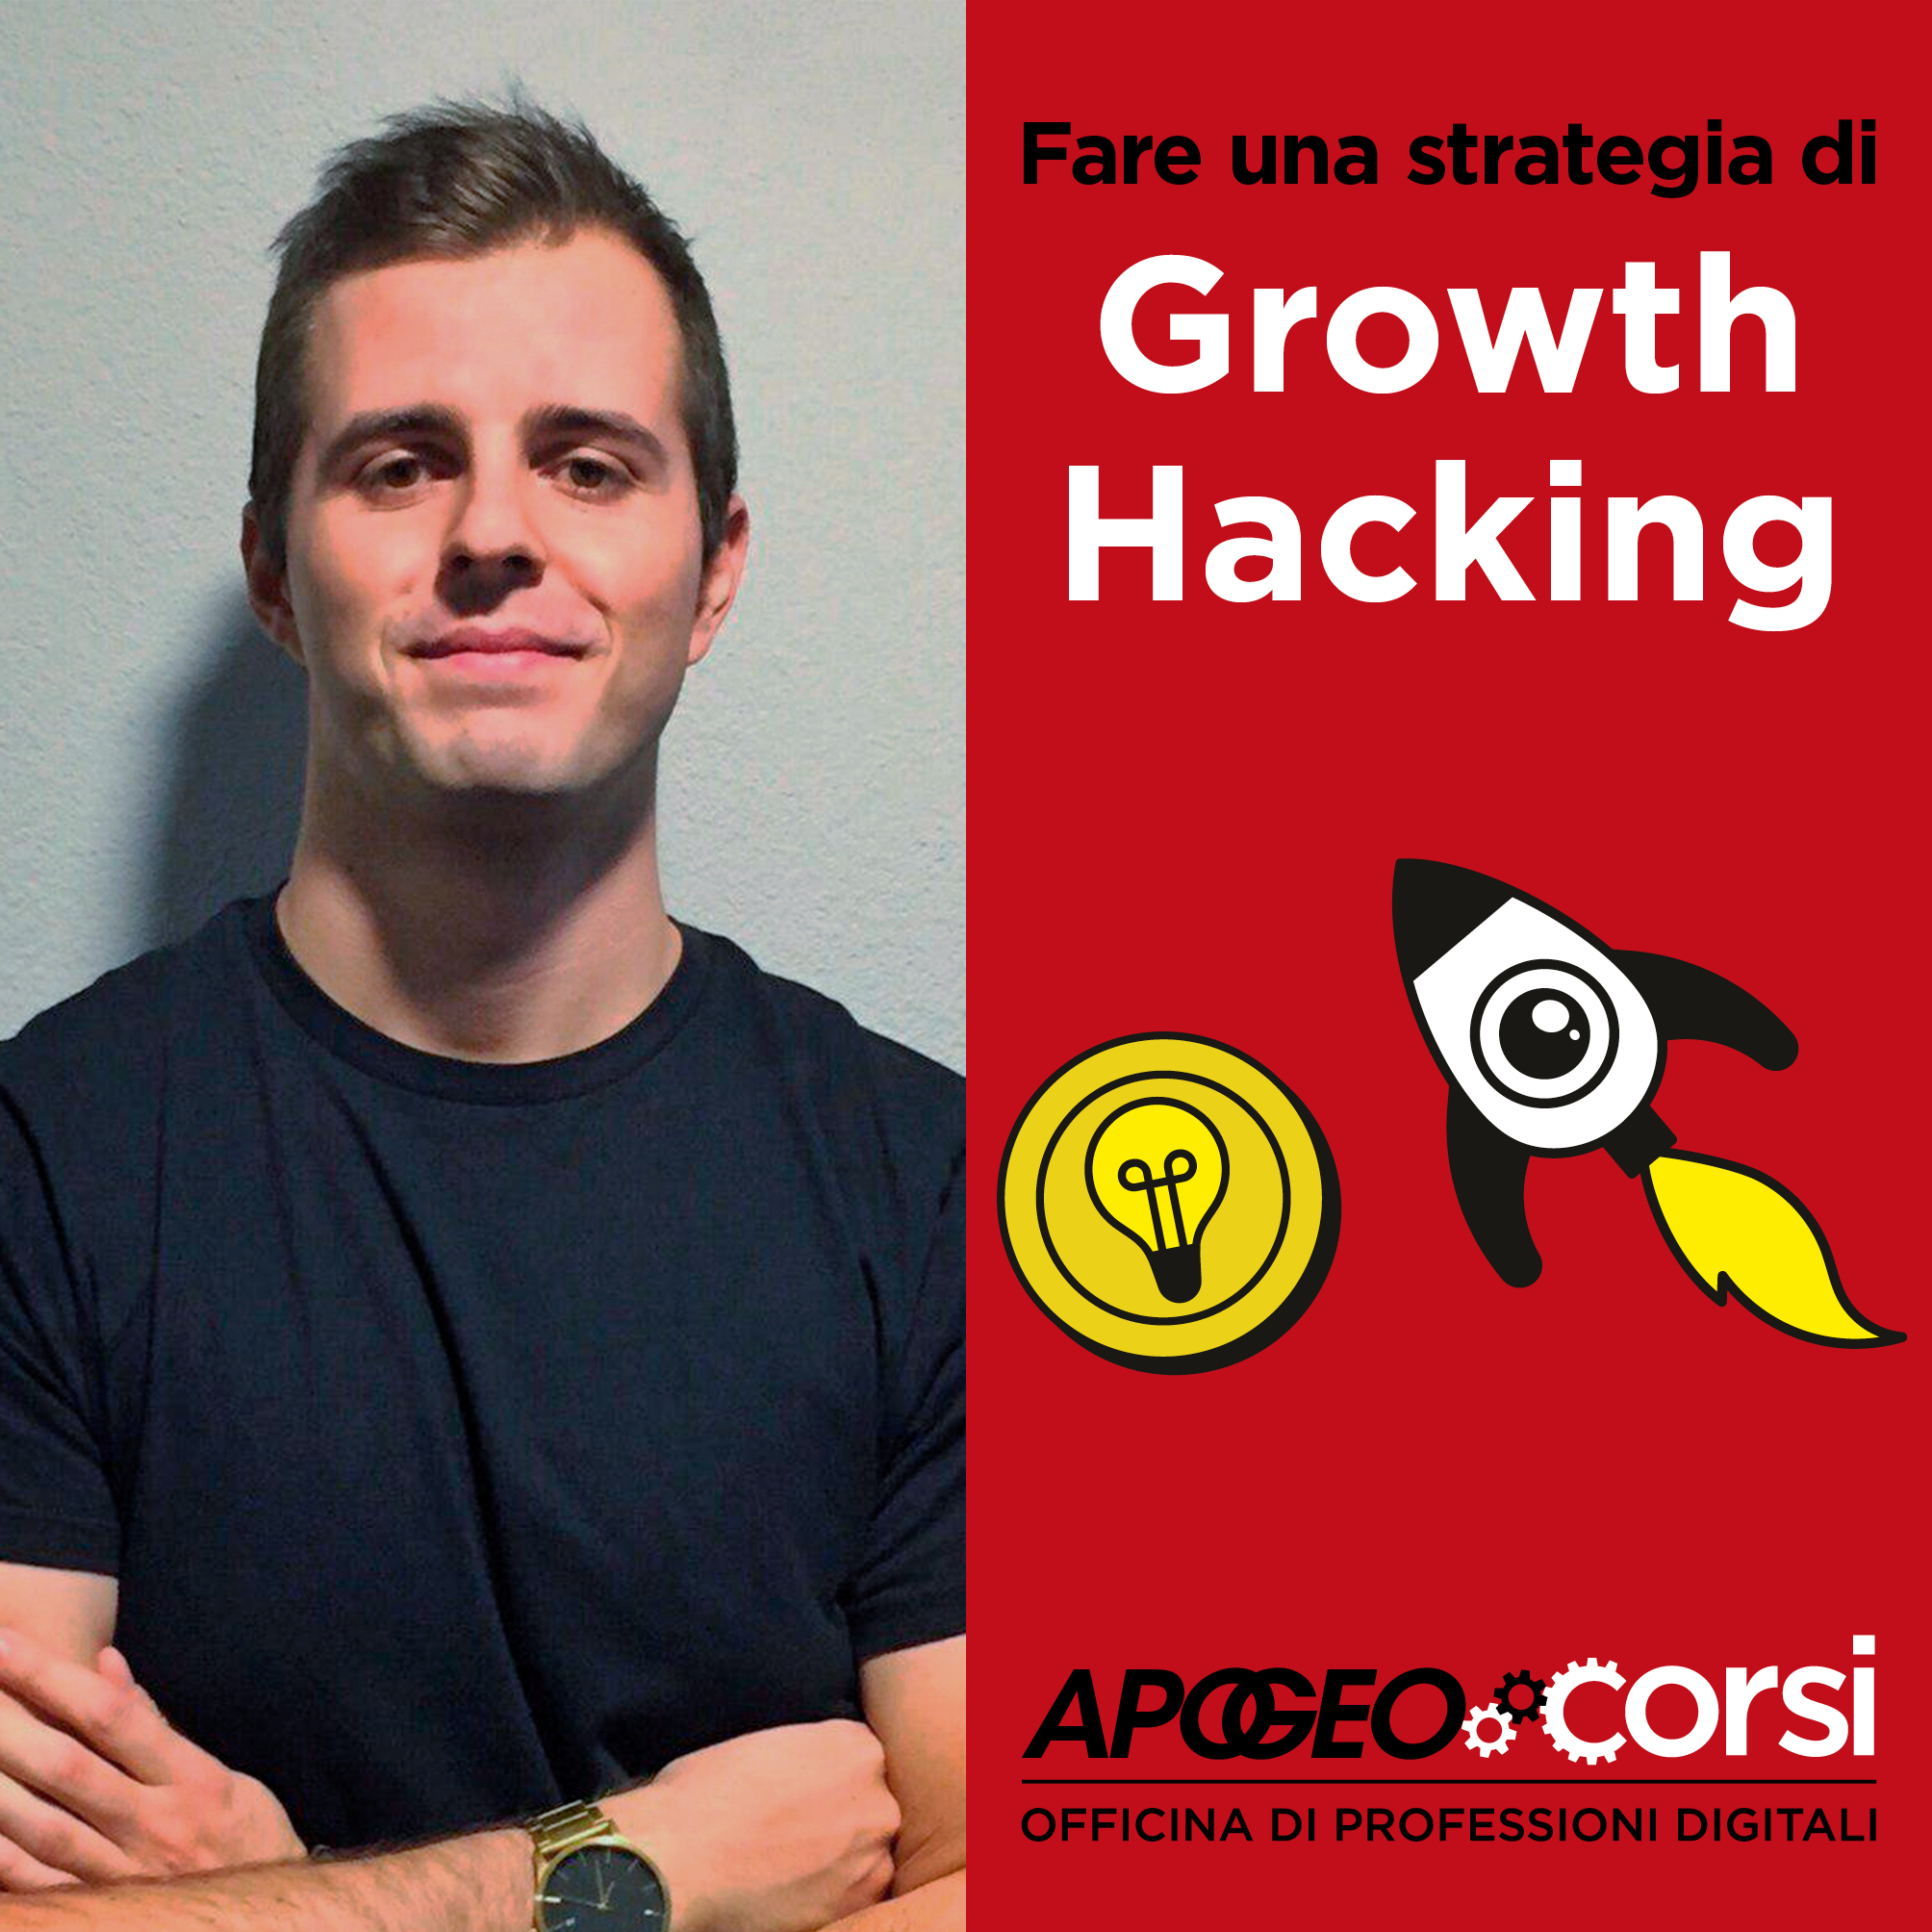 Fare-una-strategia-di-Growth-Hacking-cover